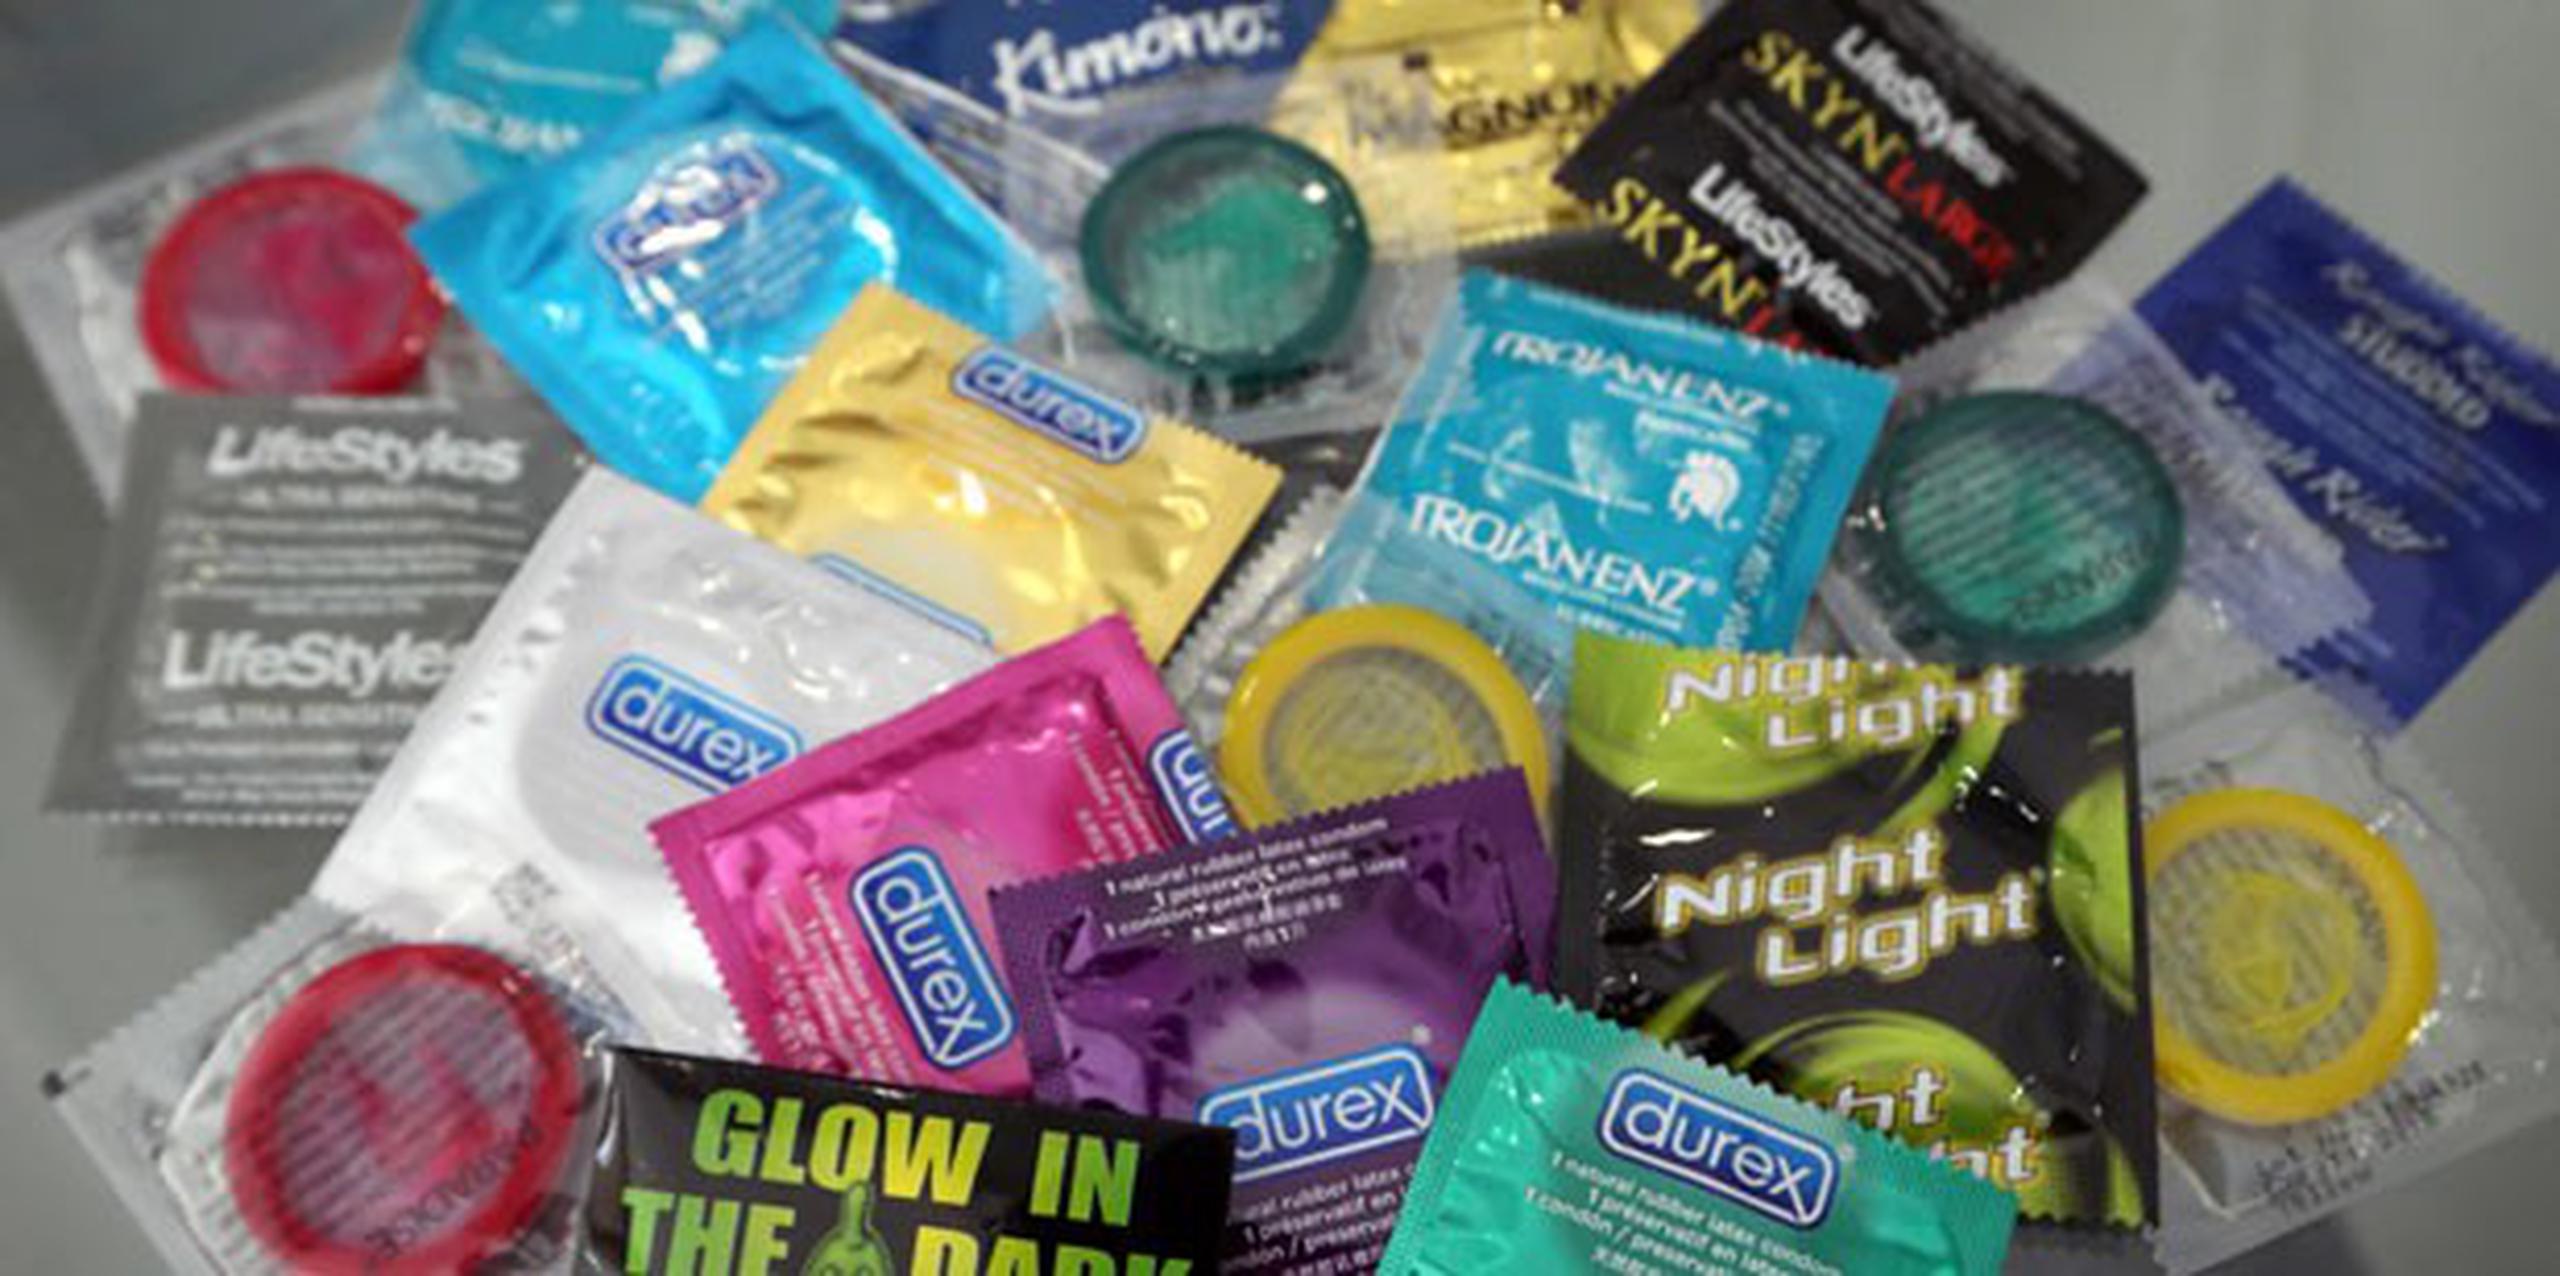 La cifra de condones supera ligeramente los 68.6 millones repartidos en el carnaval de 2014. (Archivo)